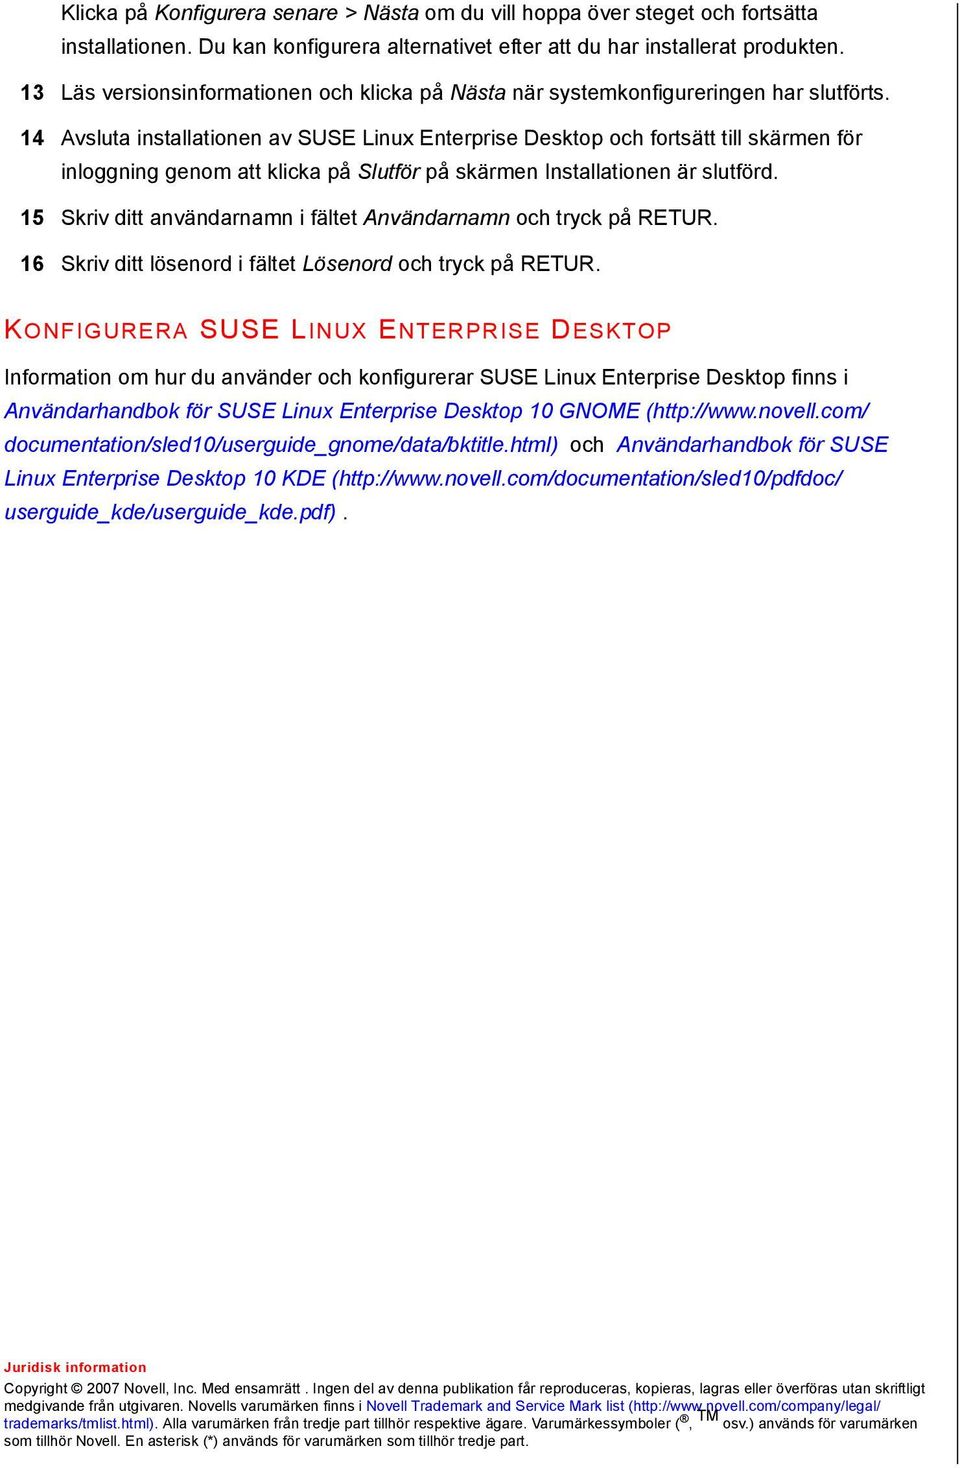 14 Avsluta installationen av SUSE Linux Enterprise Desktop och fortsätt till skärmen för inloggning genom att klicka på Slutför på skärmen Installationen är slutförd.